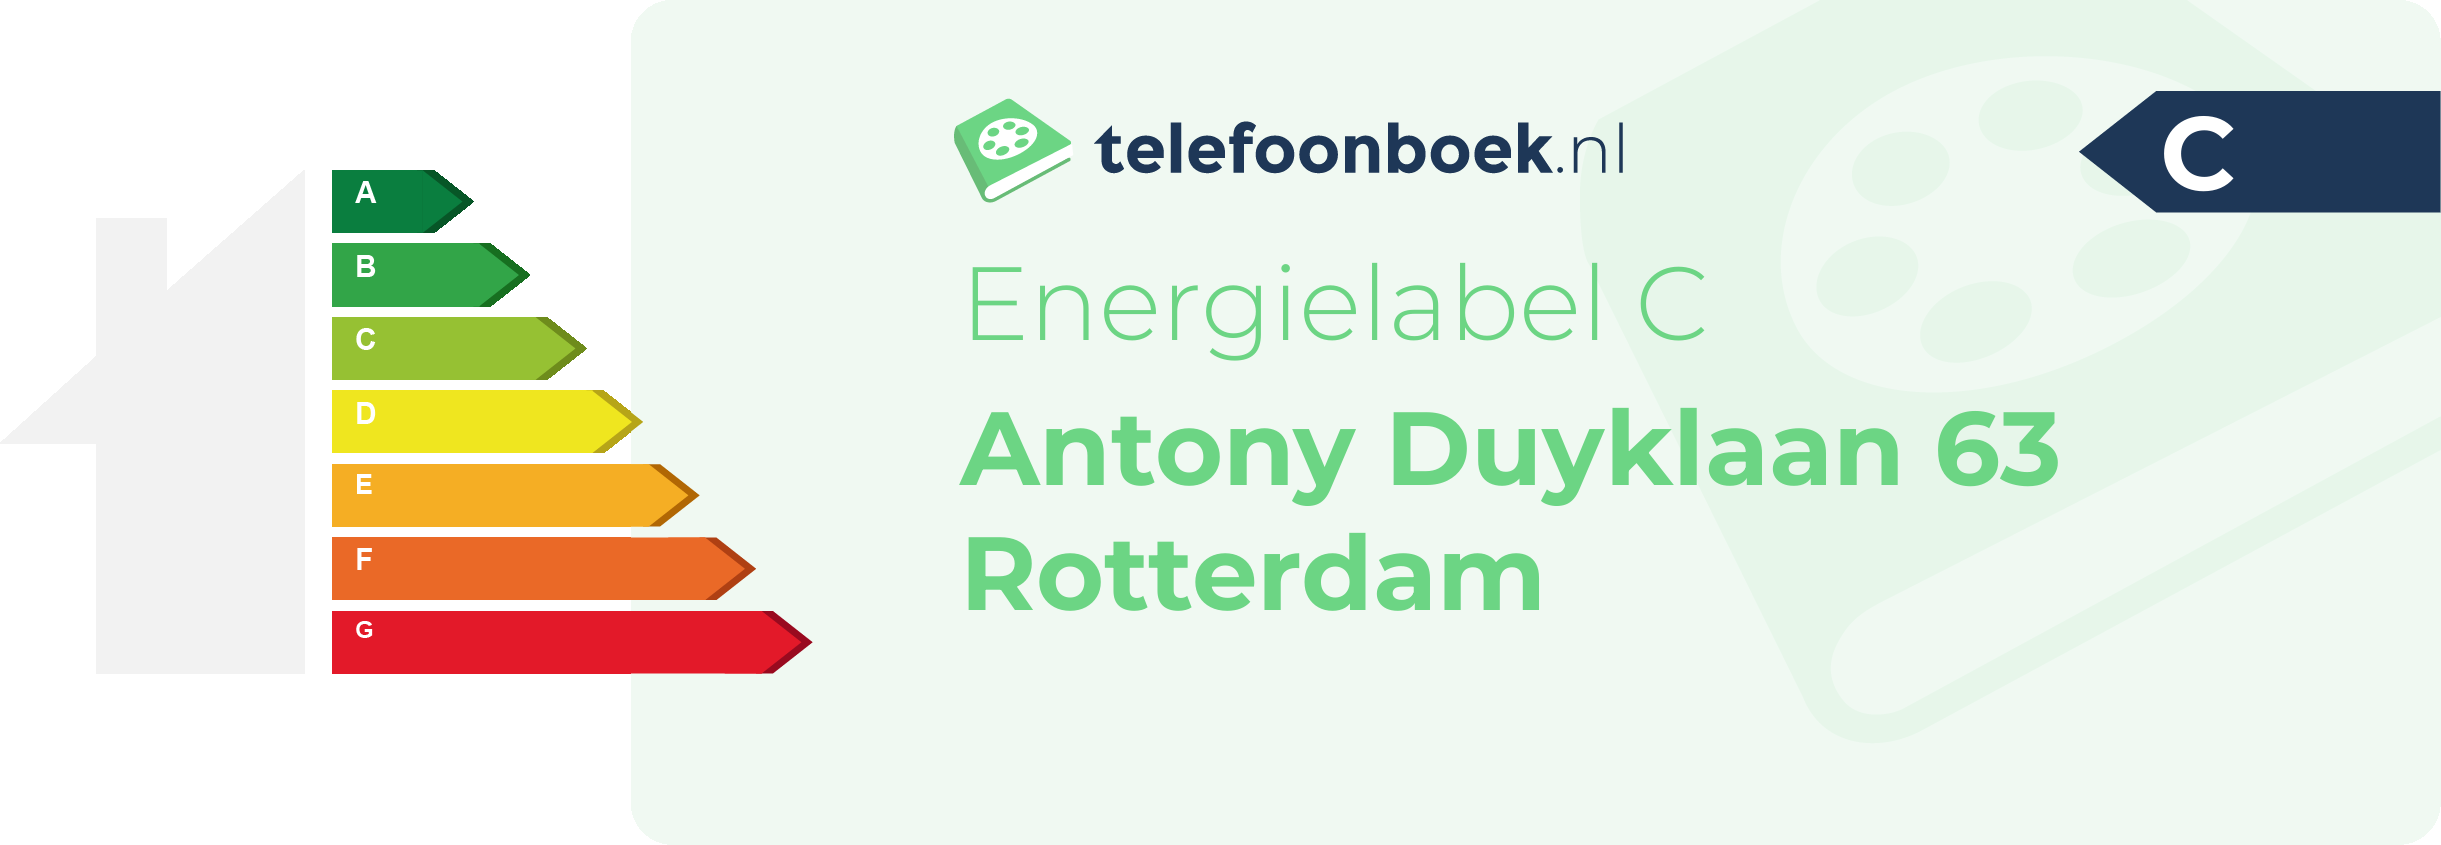 Energielabel Antony Duyklaan 63 Rotterdam